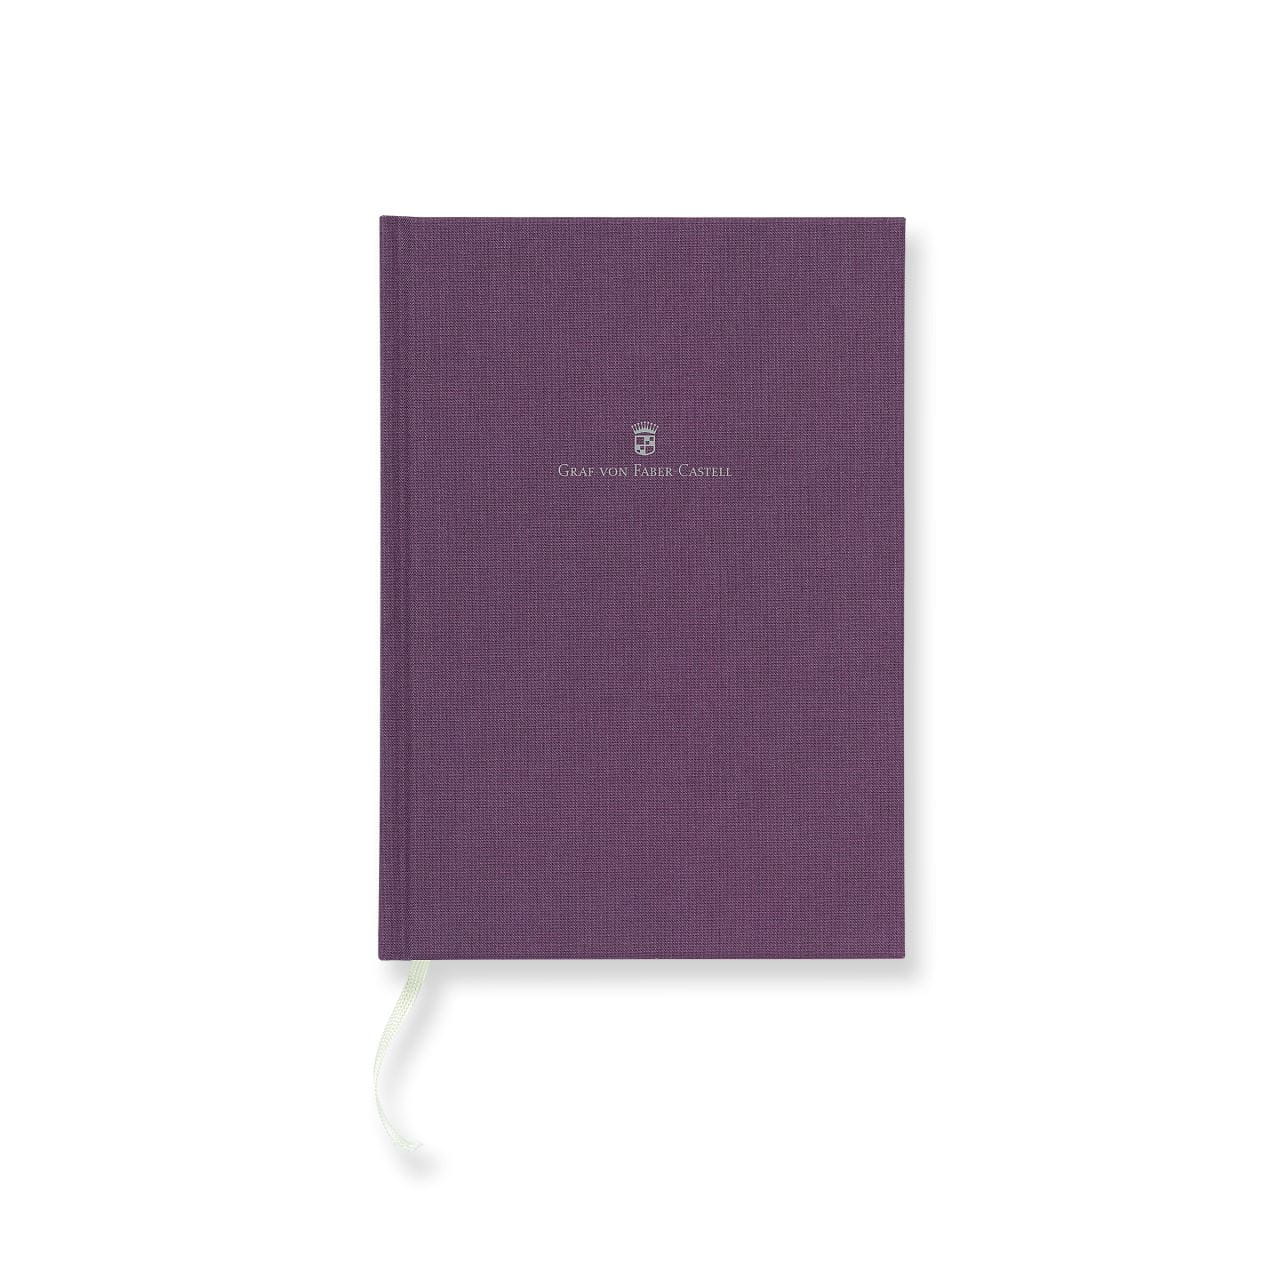 Graf-von-Faber-Castell - Cahier relié en lin A5 Violet